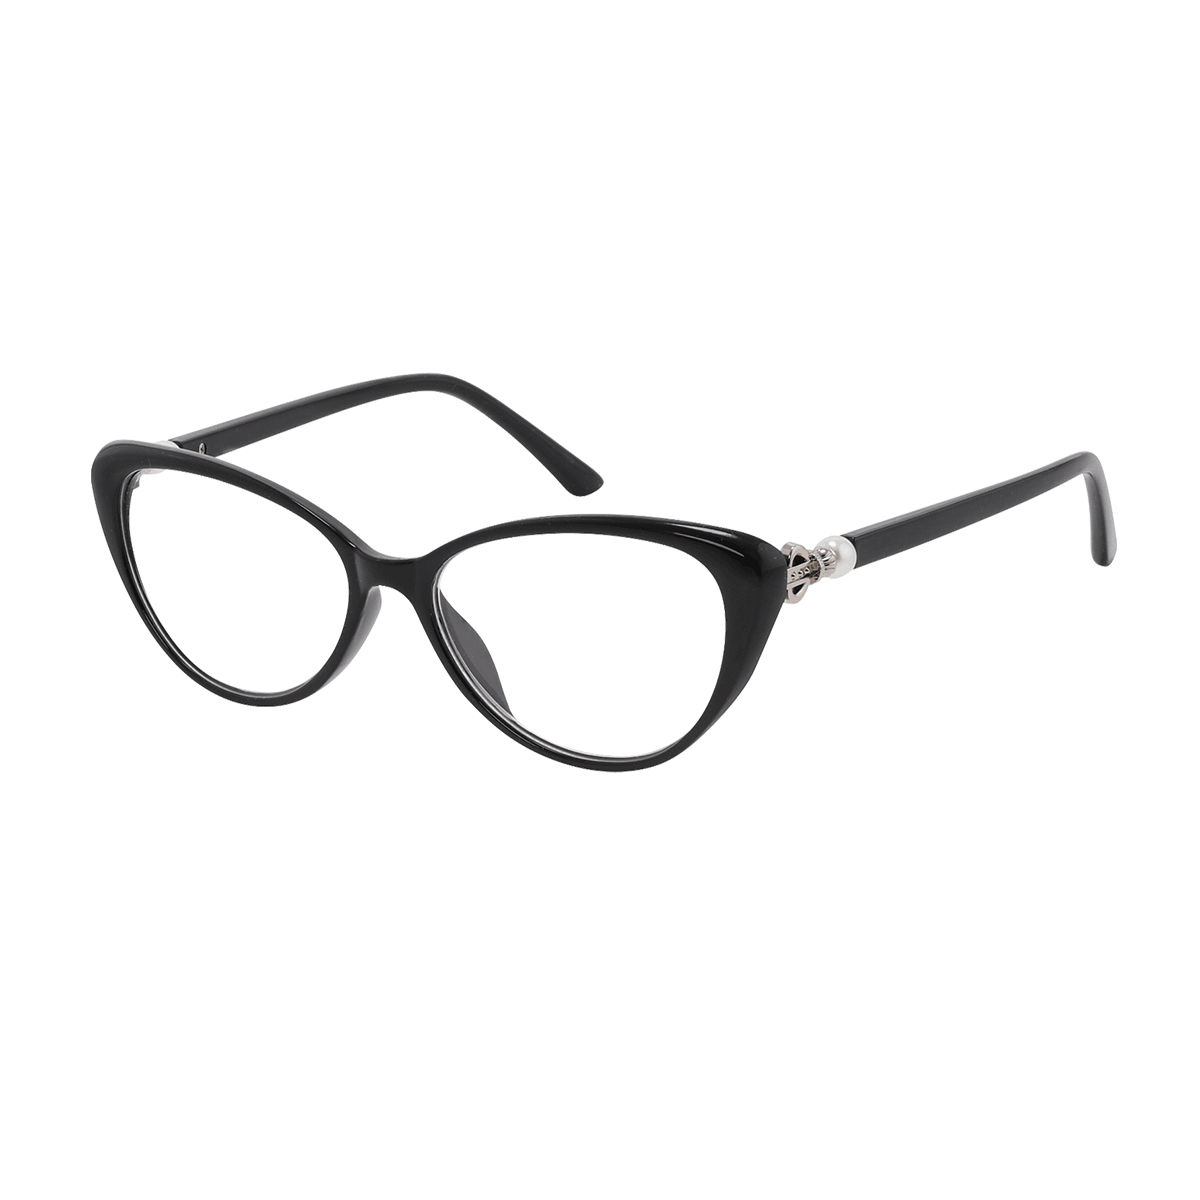 Meg - Cat-eye Black Reading Glasses for Women